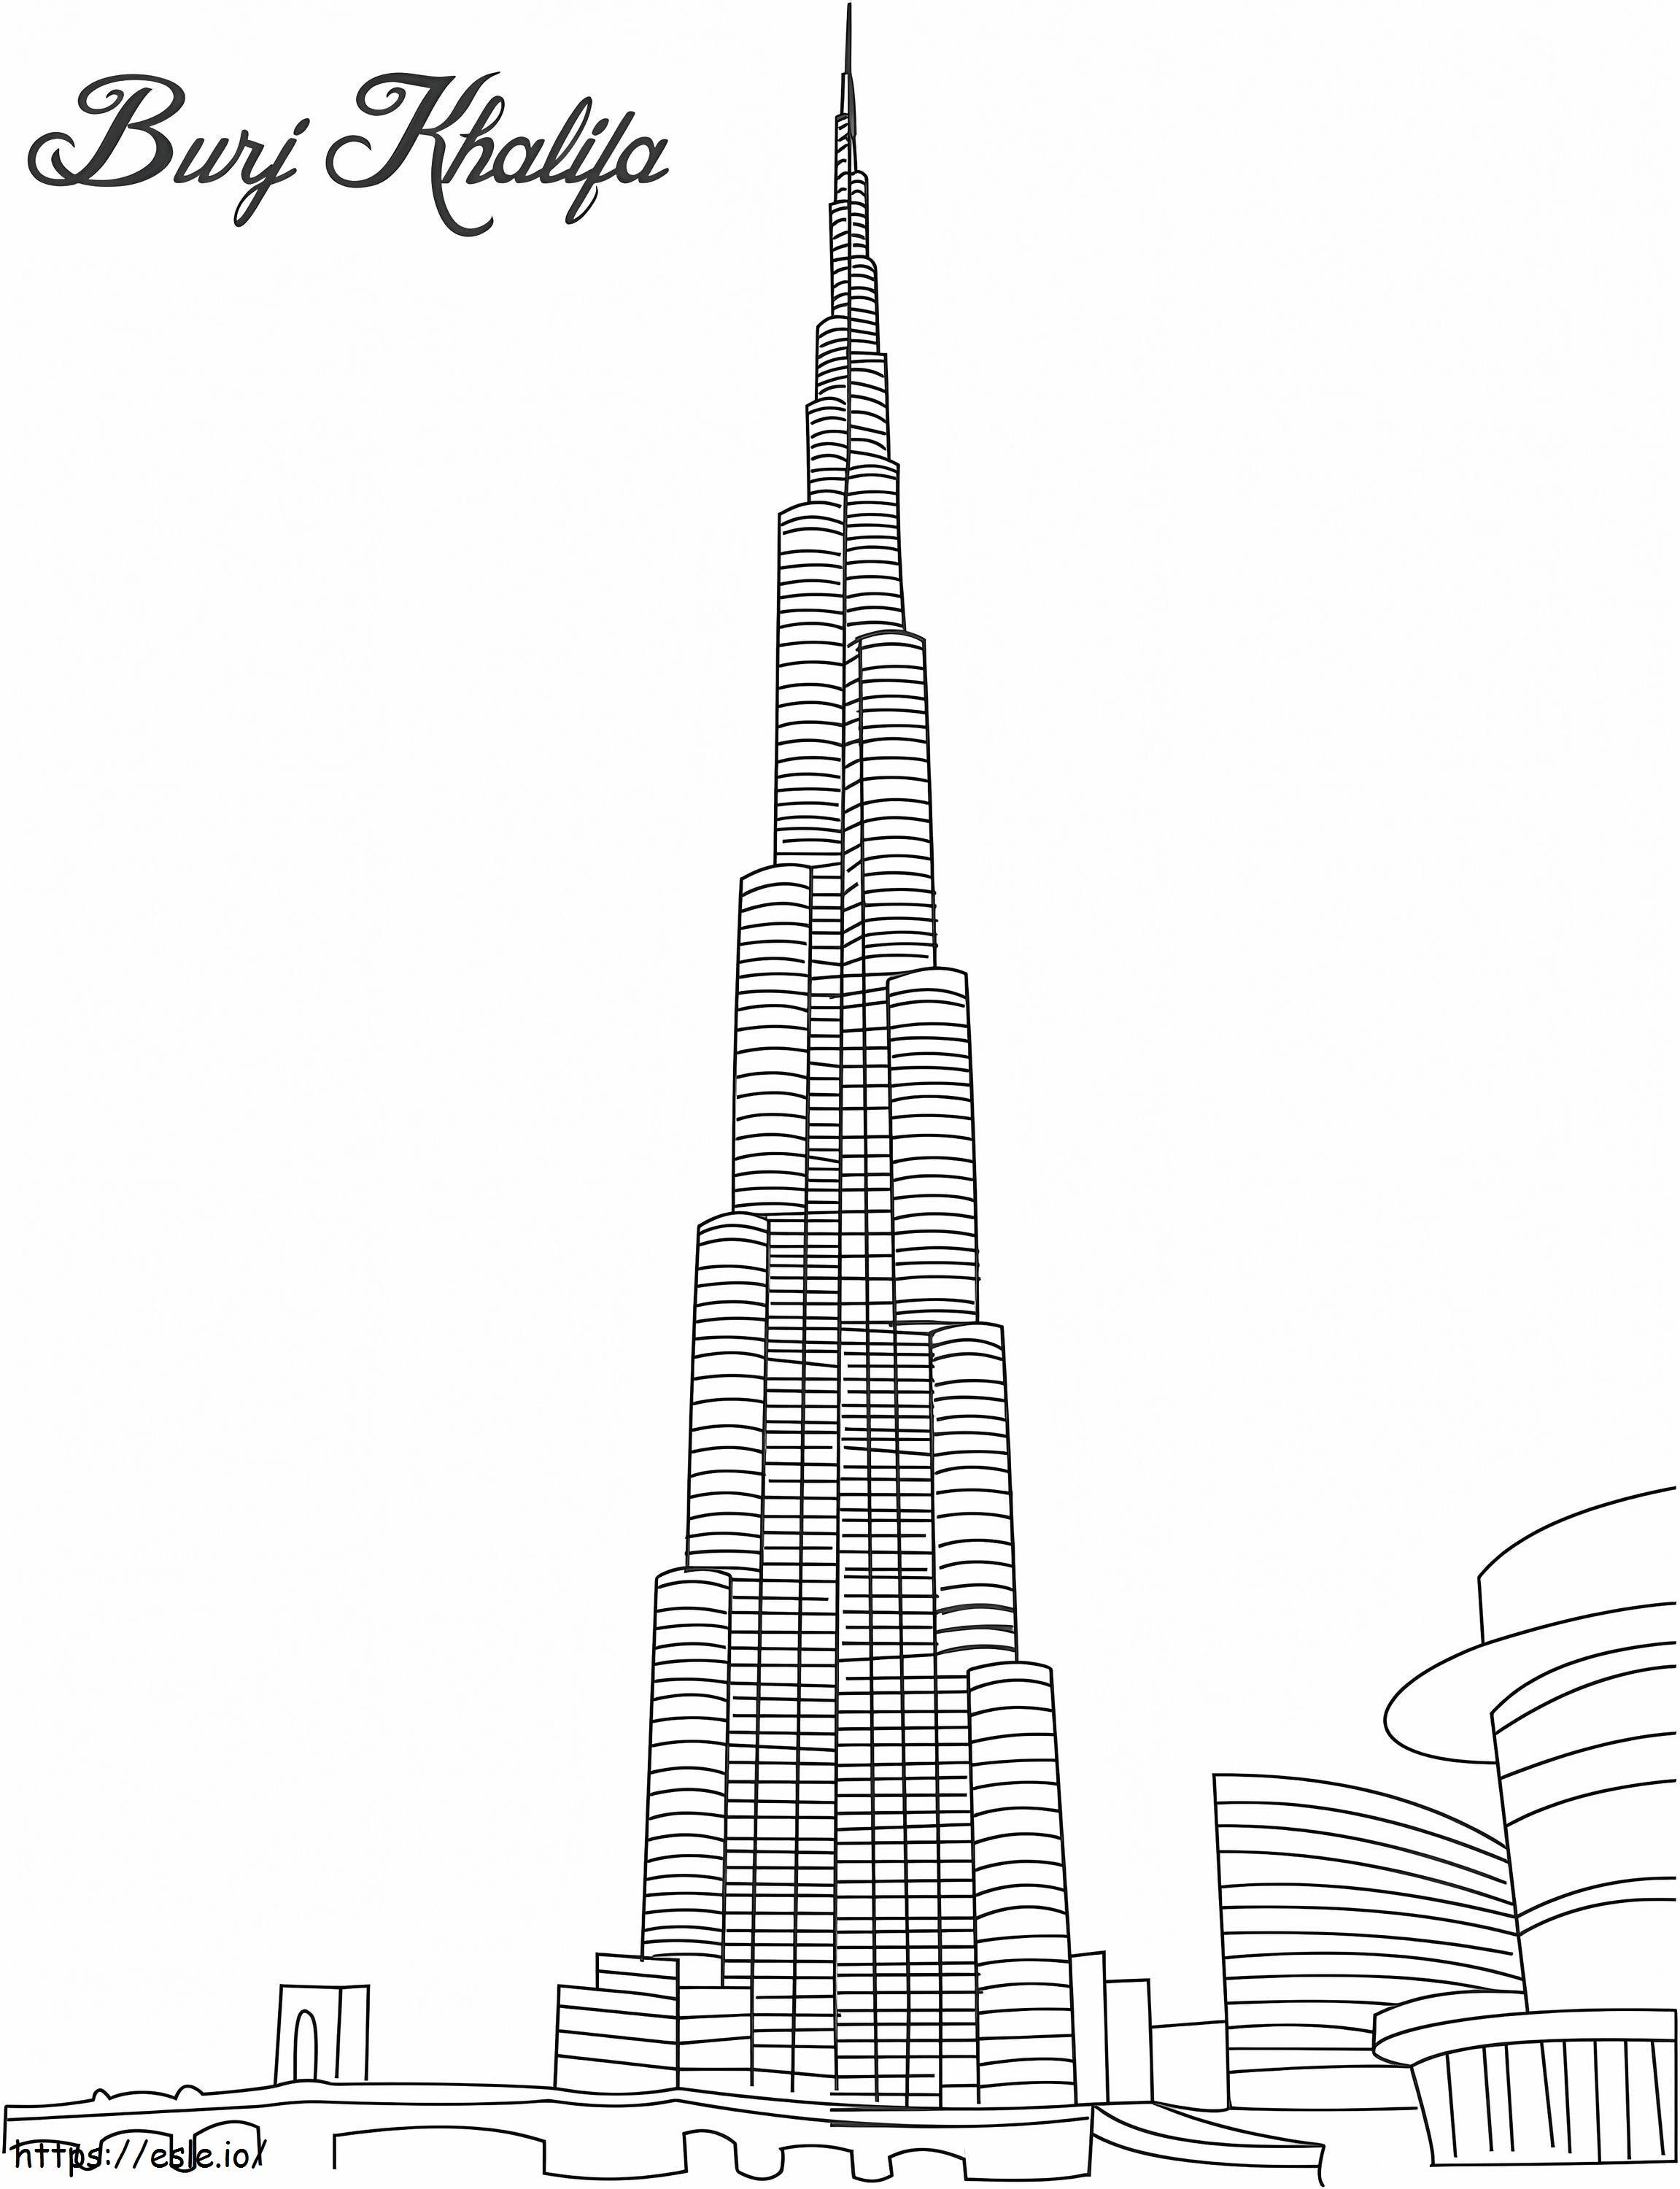 1526980175 3350 29310 Burj Khalifa coloring page